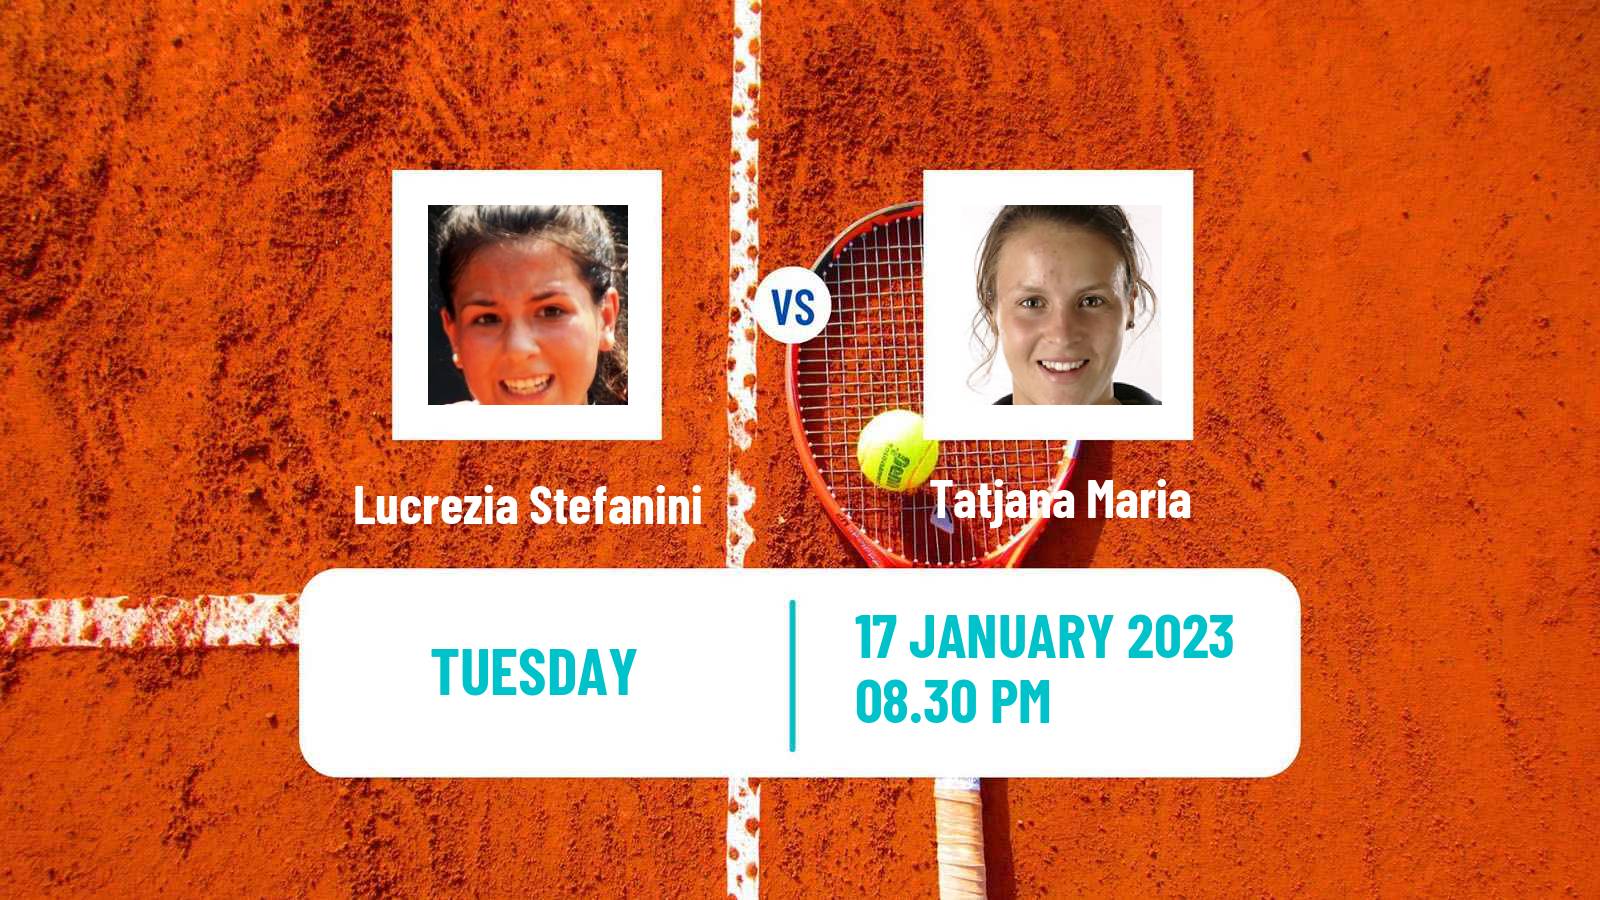 Tennis WTA Australian Open Lucrezia Stefanini - Tatjana Maria